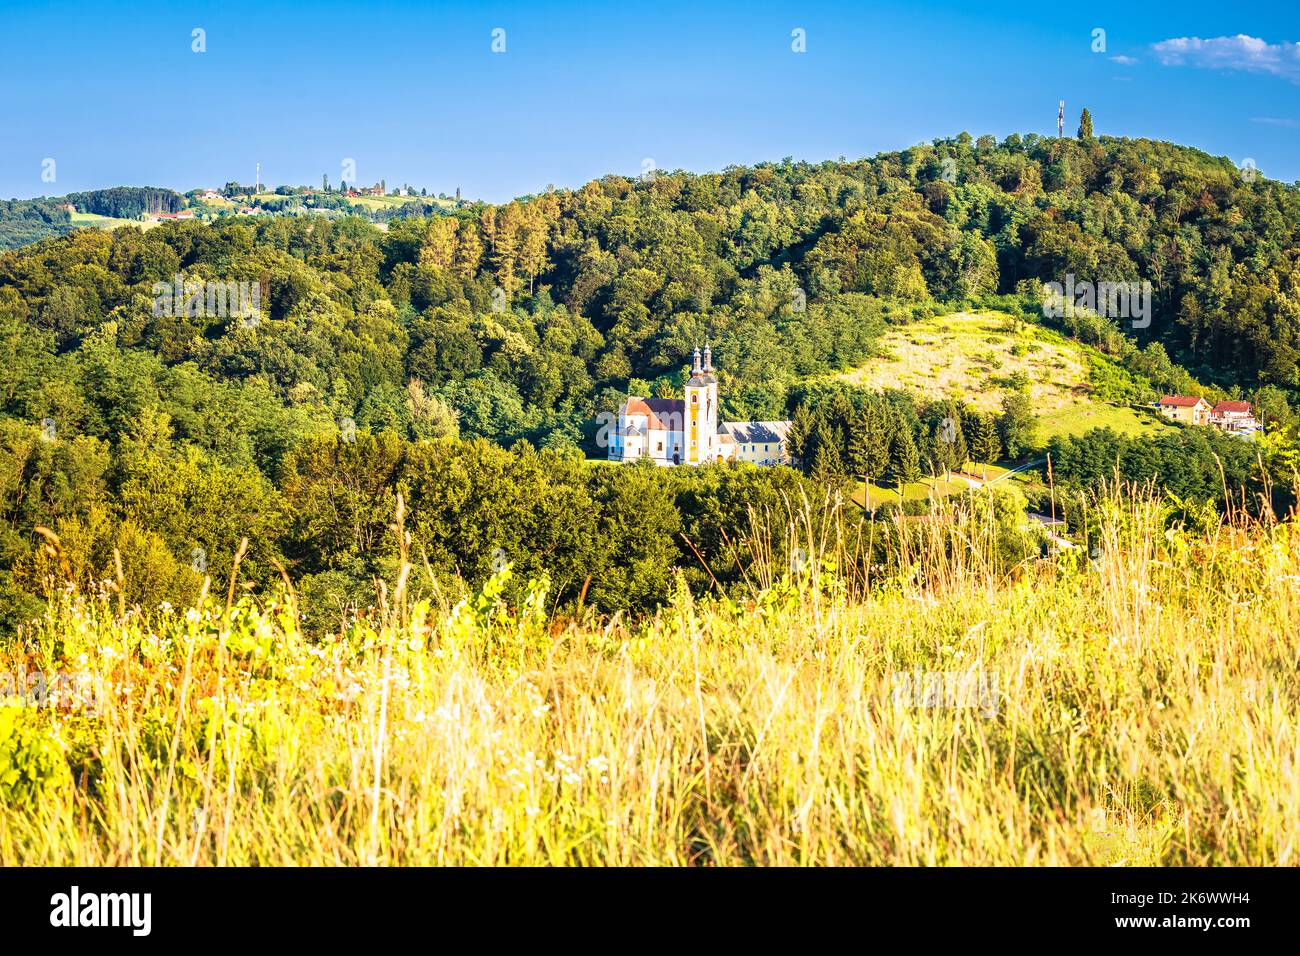 Dorf Strigova grüne Landschaft Hügel Blick, Medjimurje Region im Norden Kroatiens Stockfoto